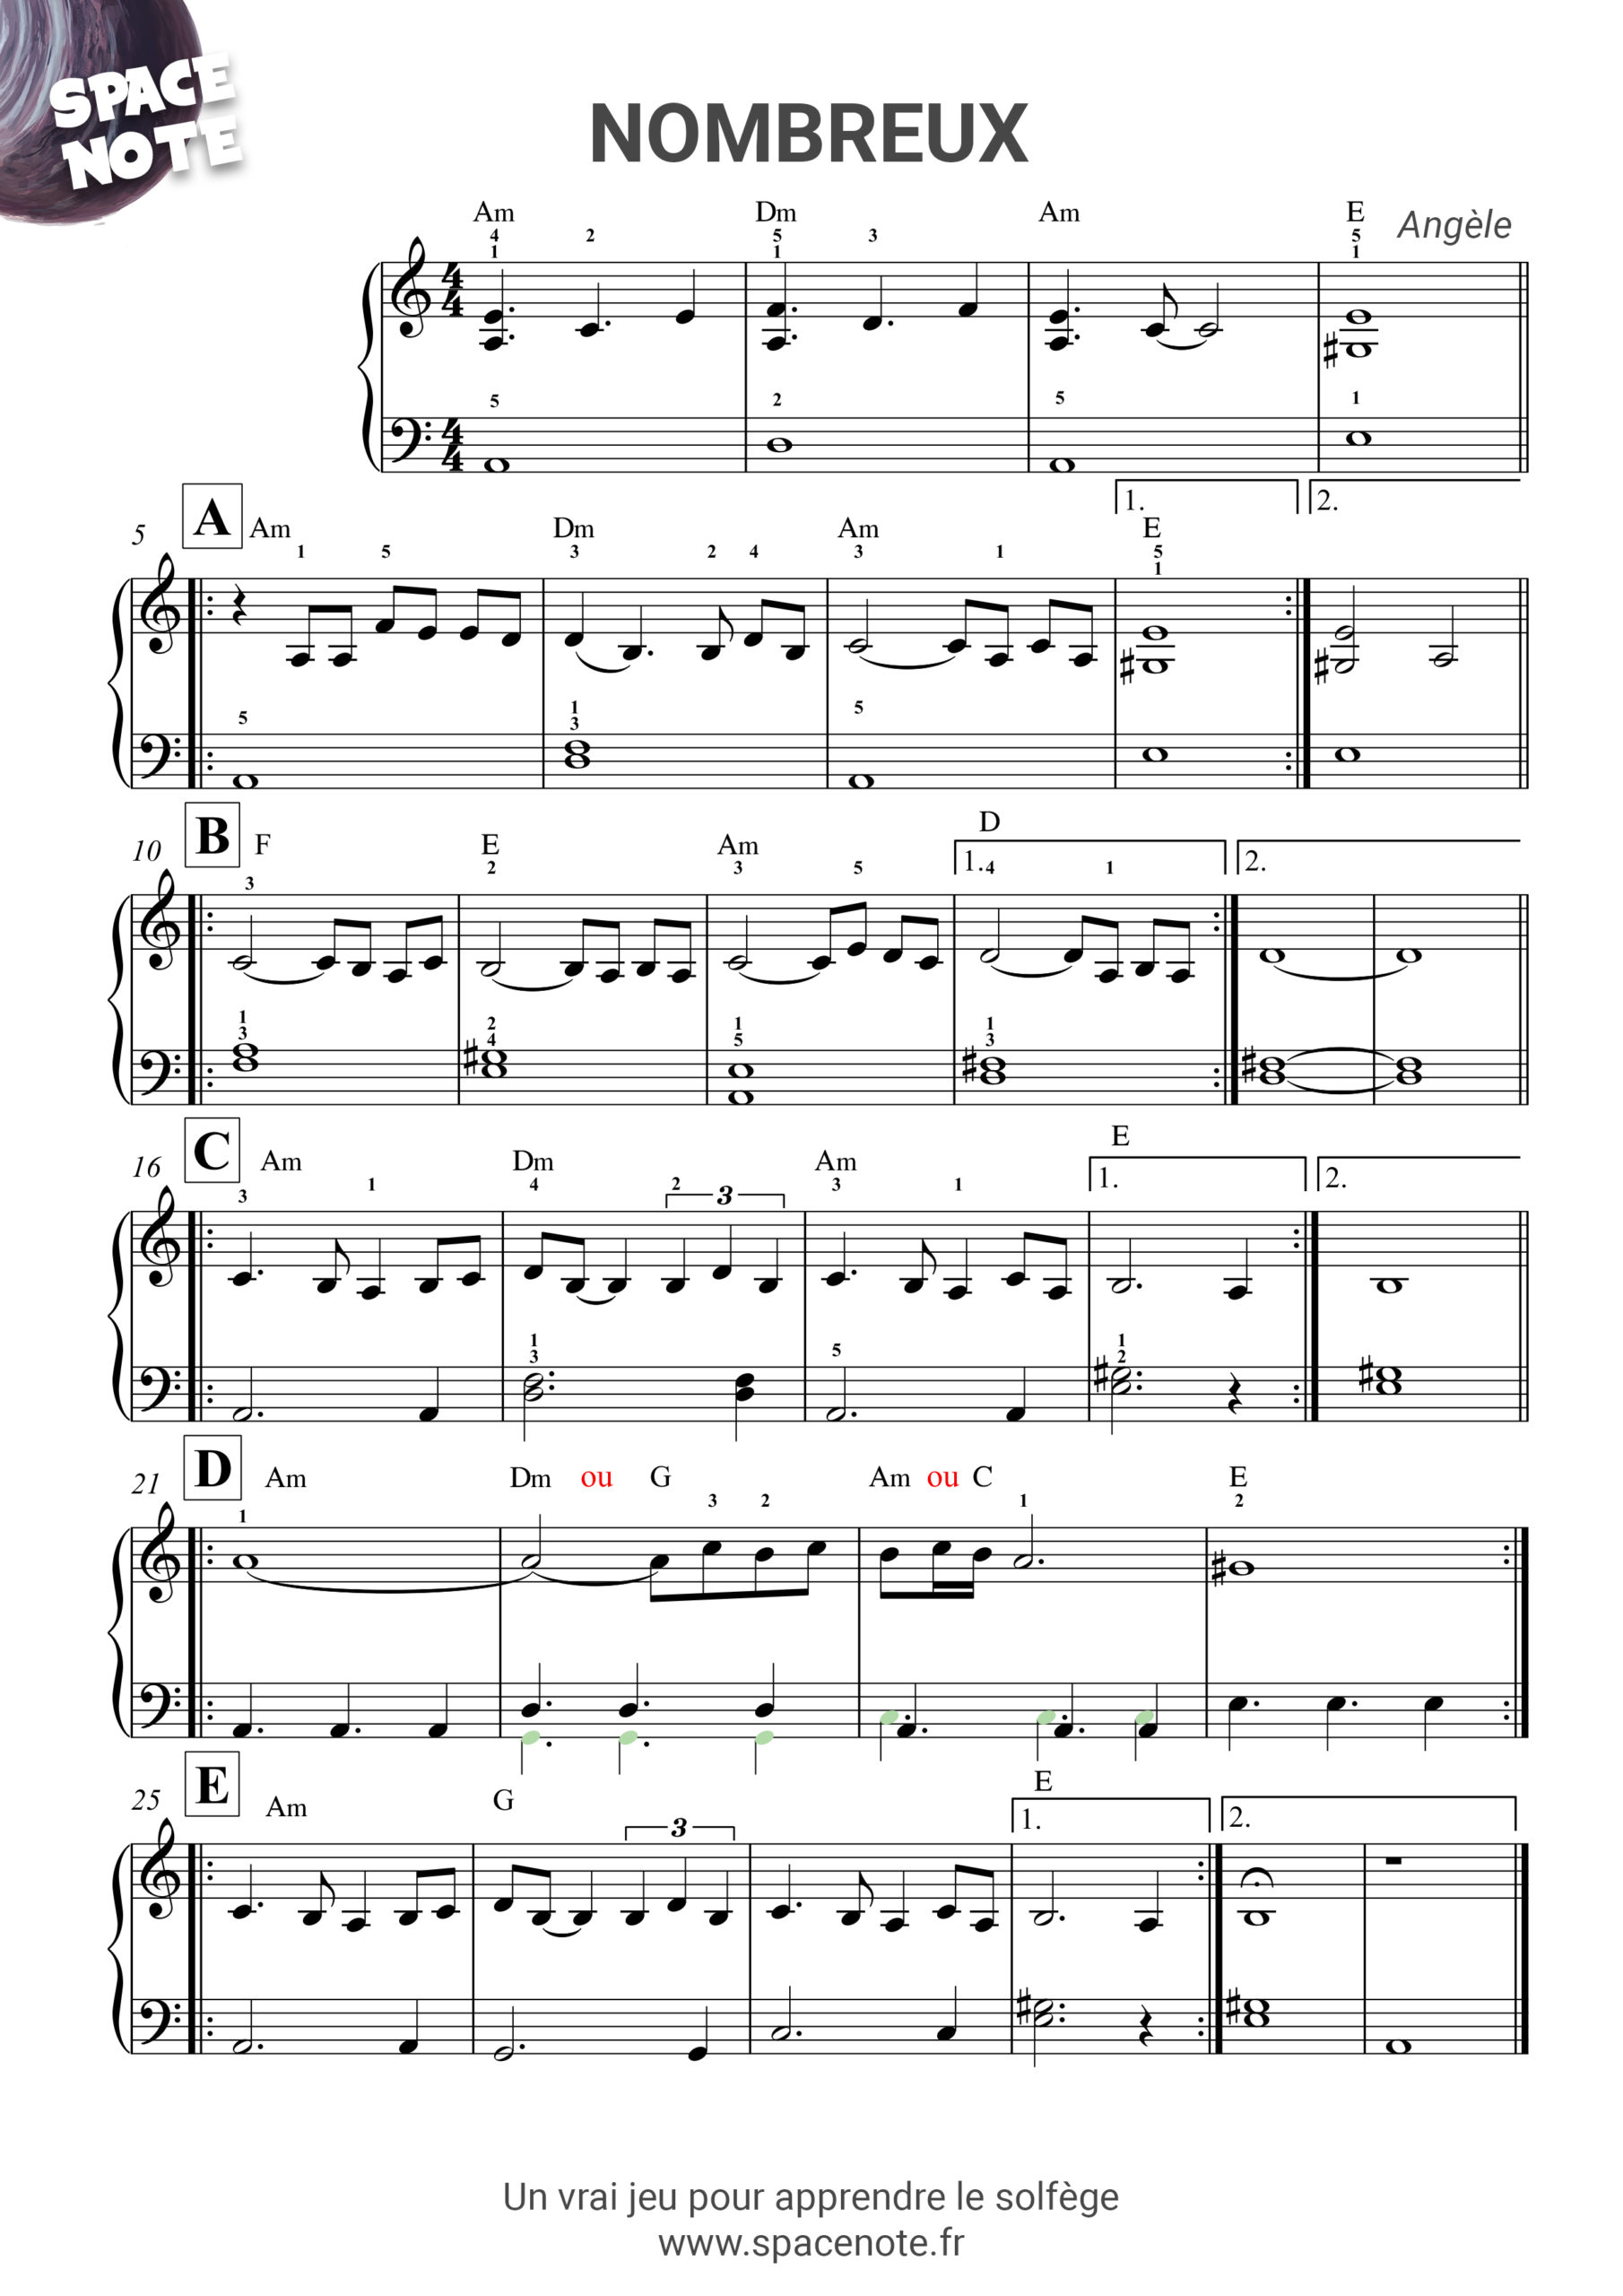 Partitions piano, de la partition piano confirmée à la partition piano  facile